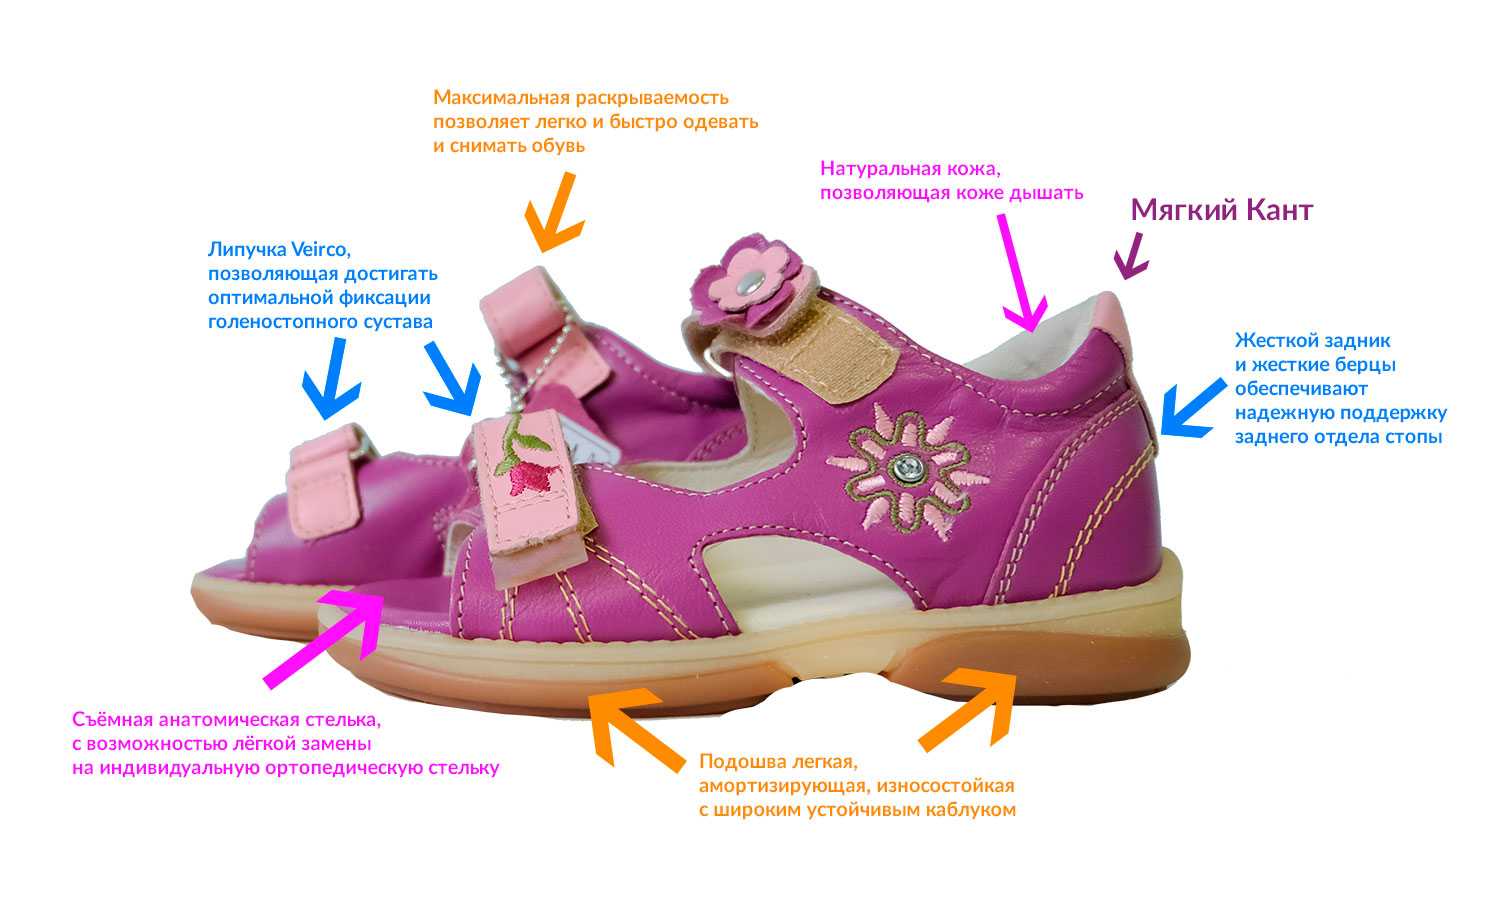 Ортопедическая обувь для детей